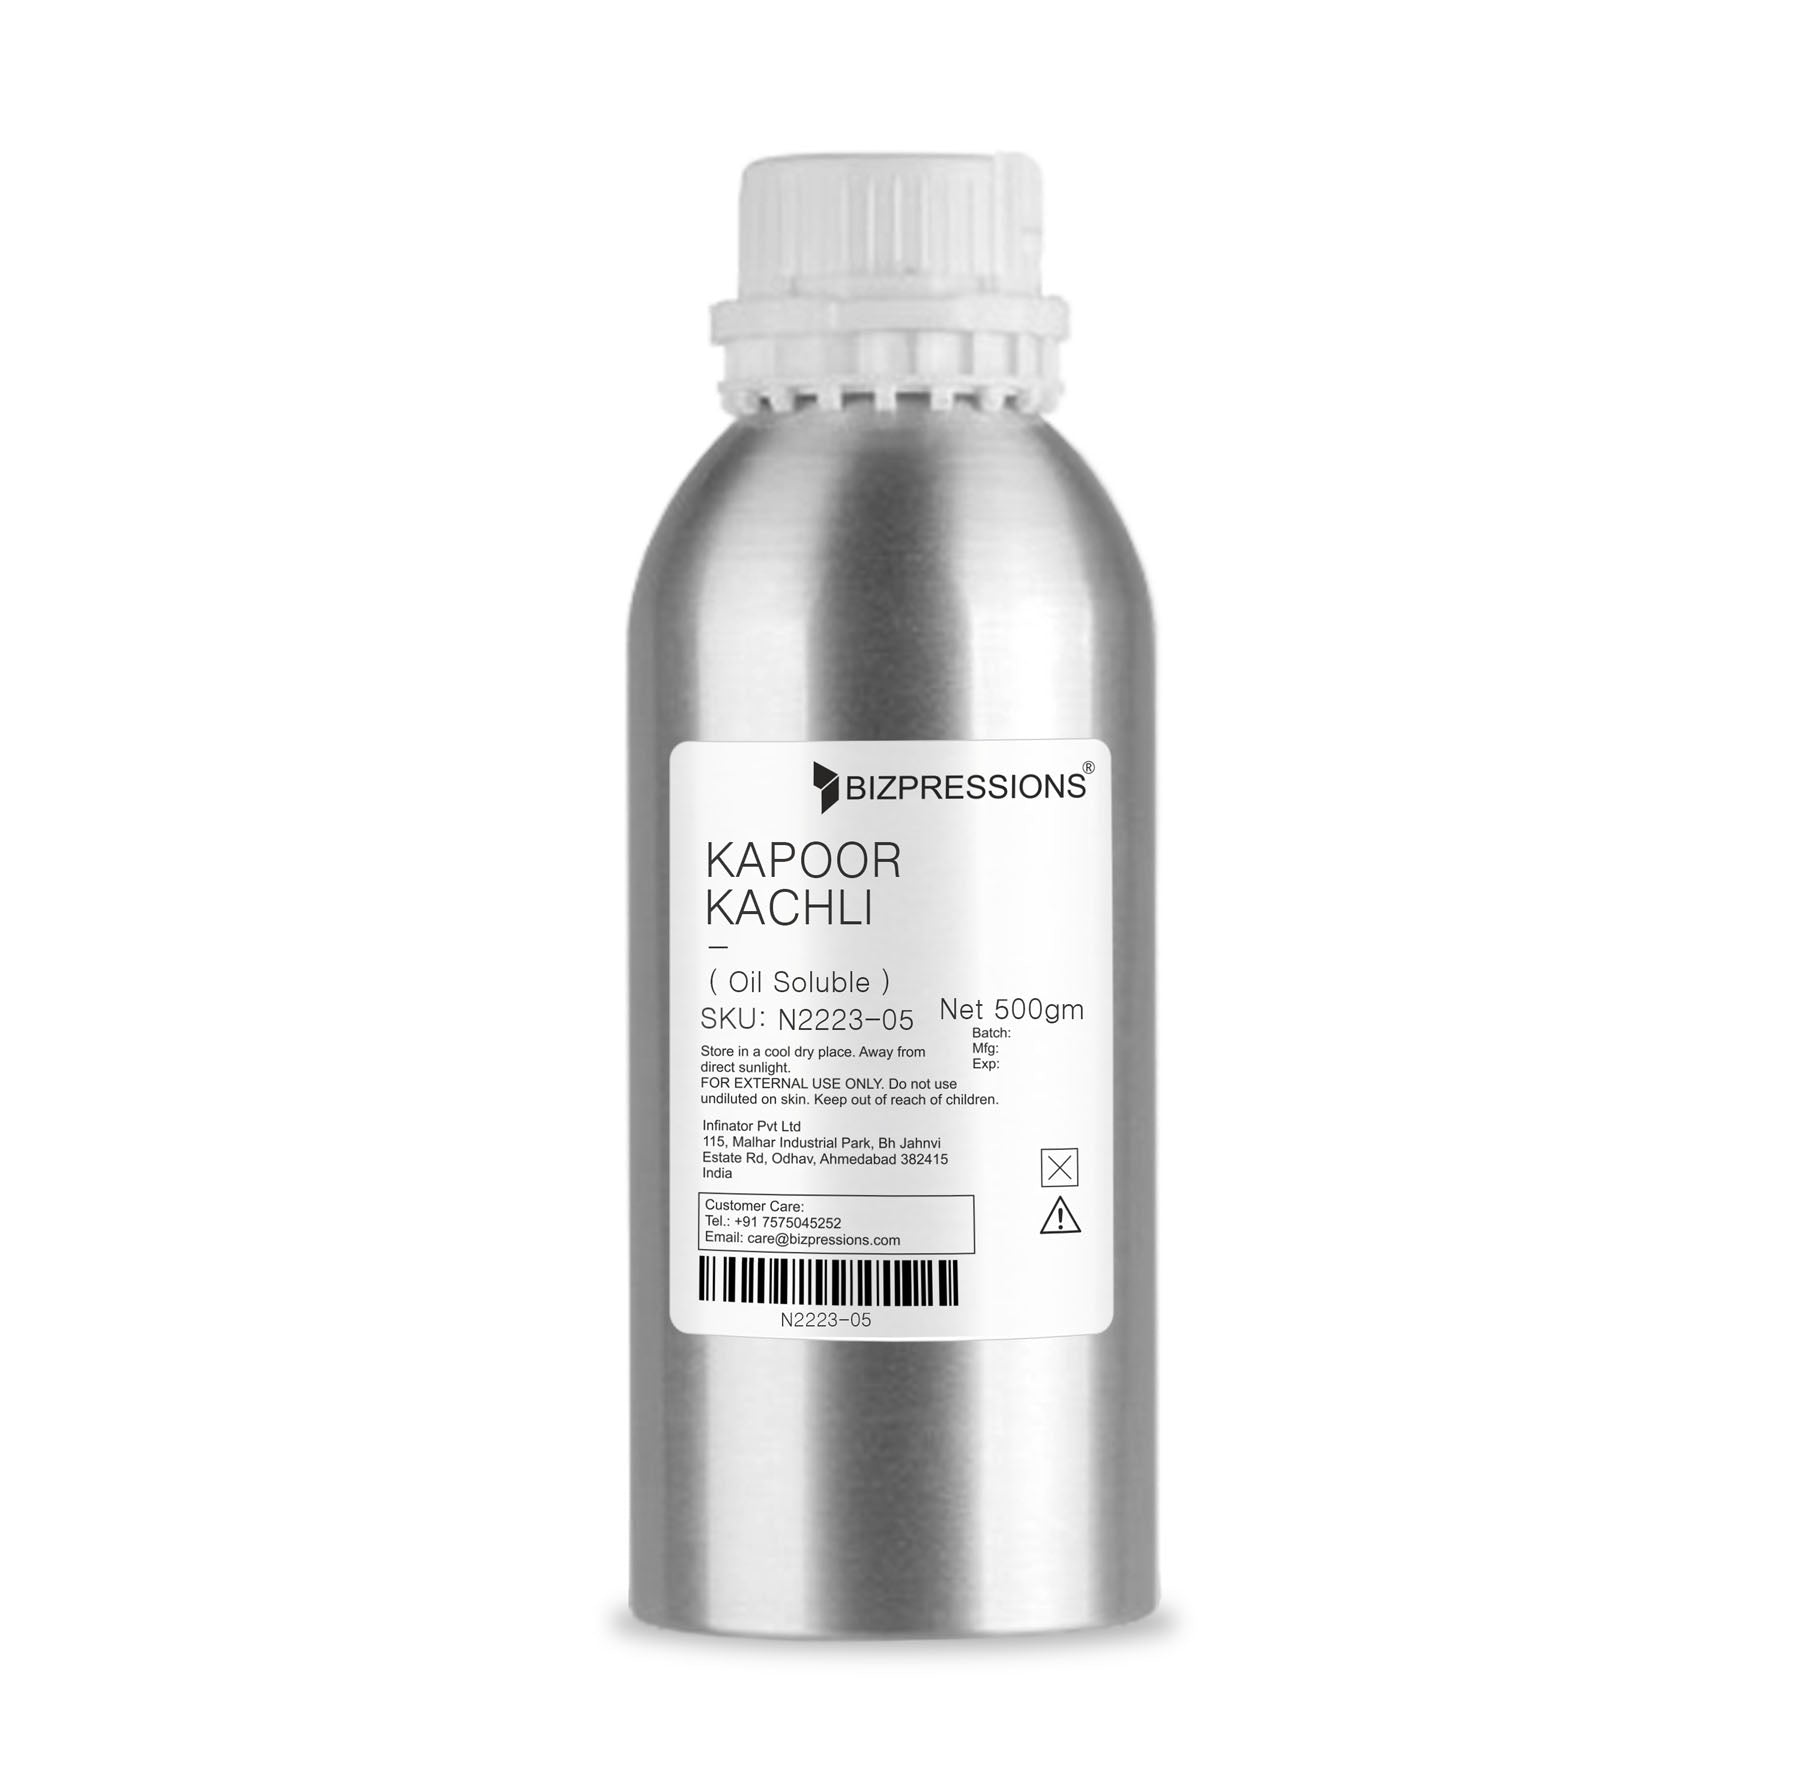 KAPOOR KACHLI - A - Fragrance ( Oil Soluble ) - 500 gm